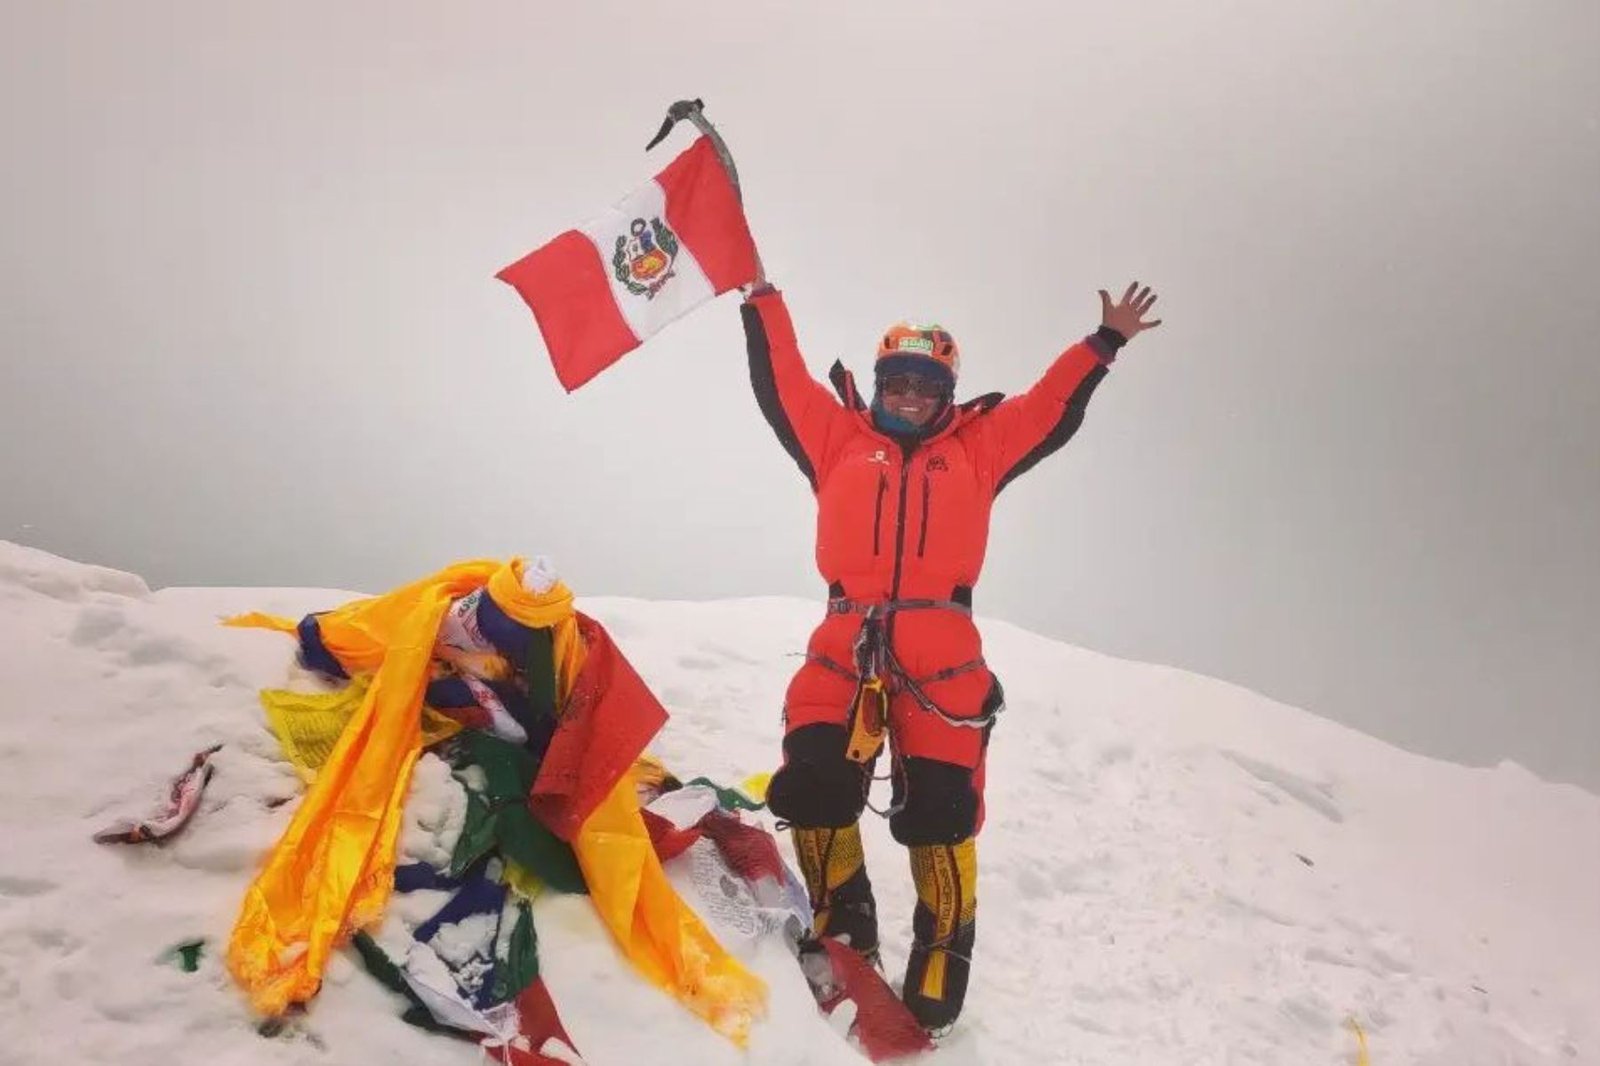 Montañista peruana conquista su sétima cumbre en el Himalaya